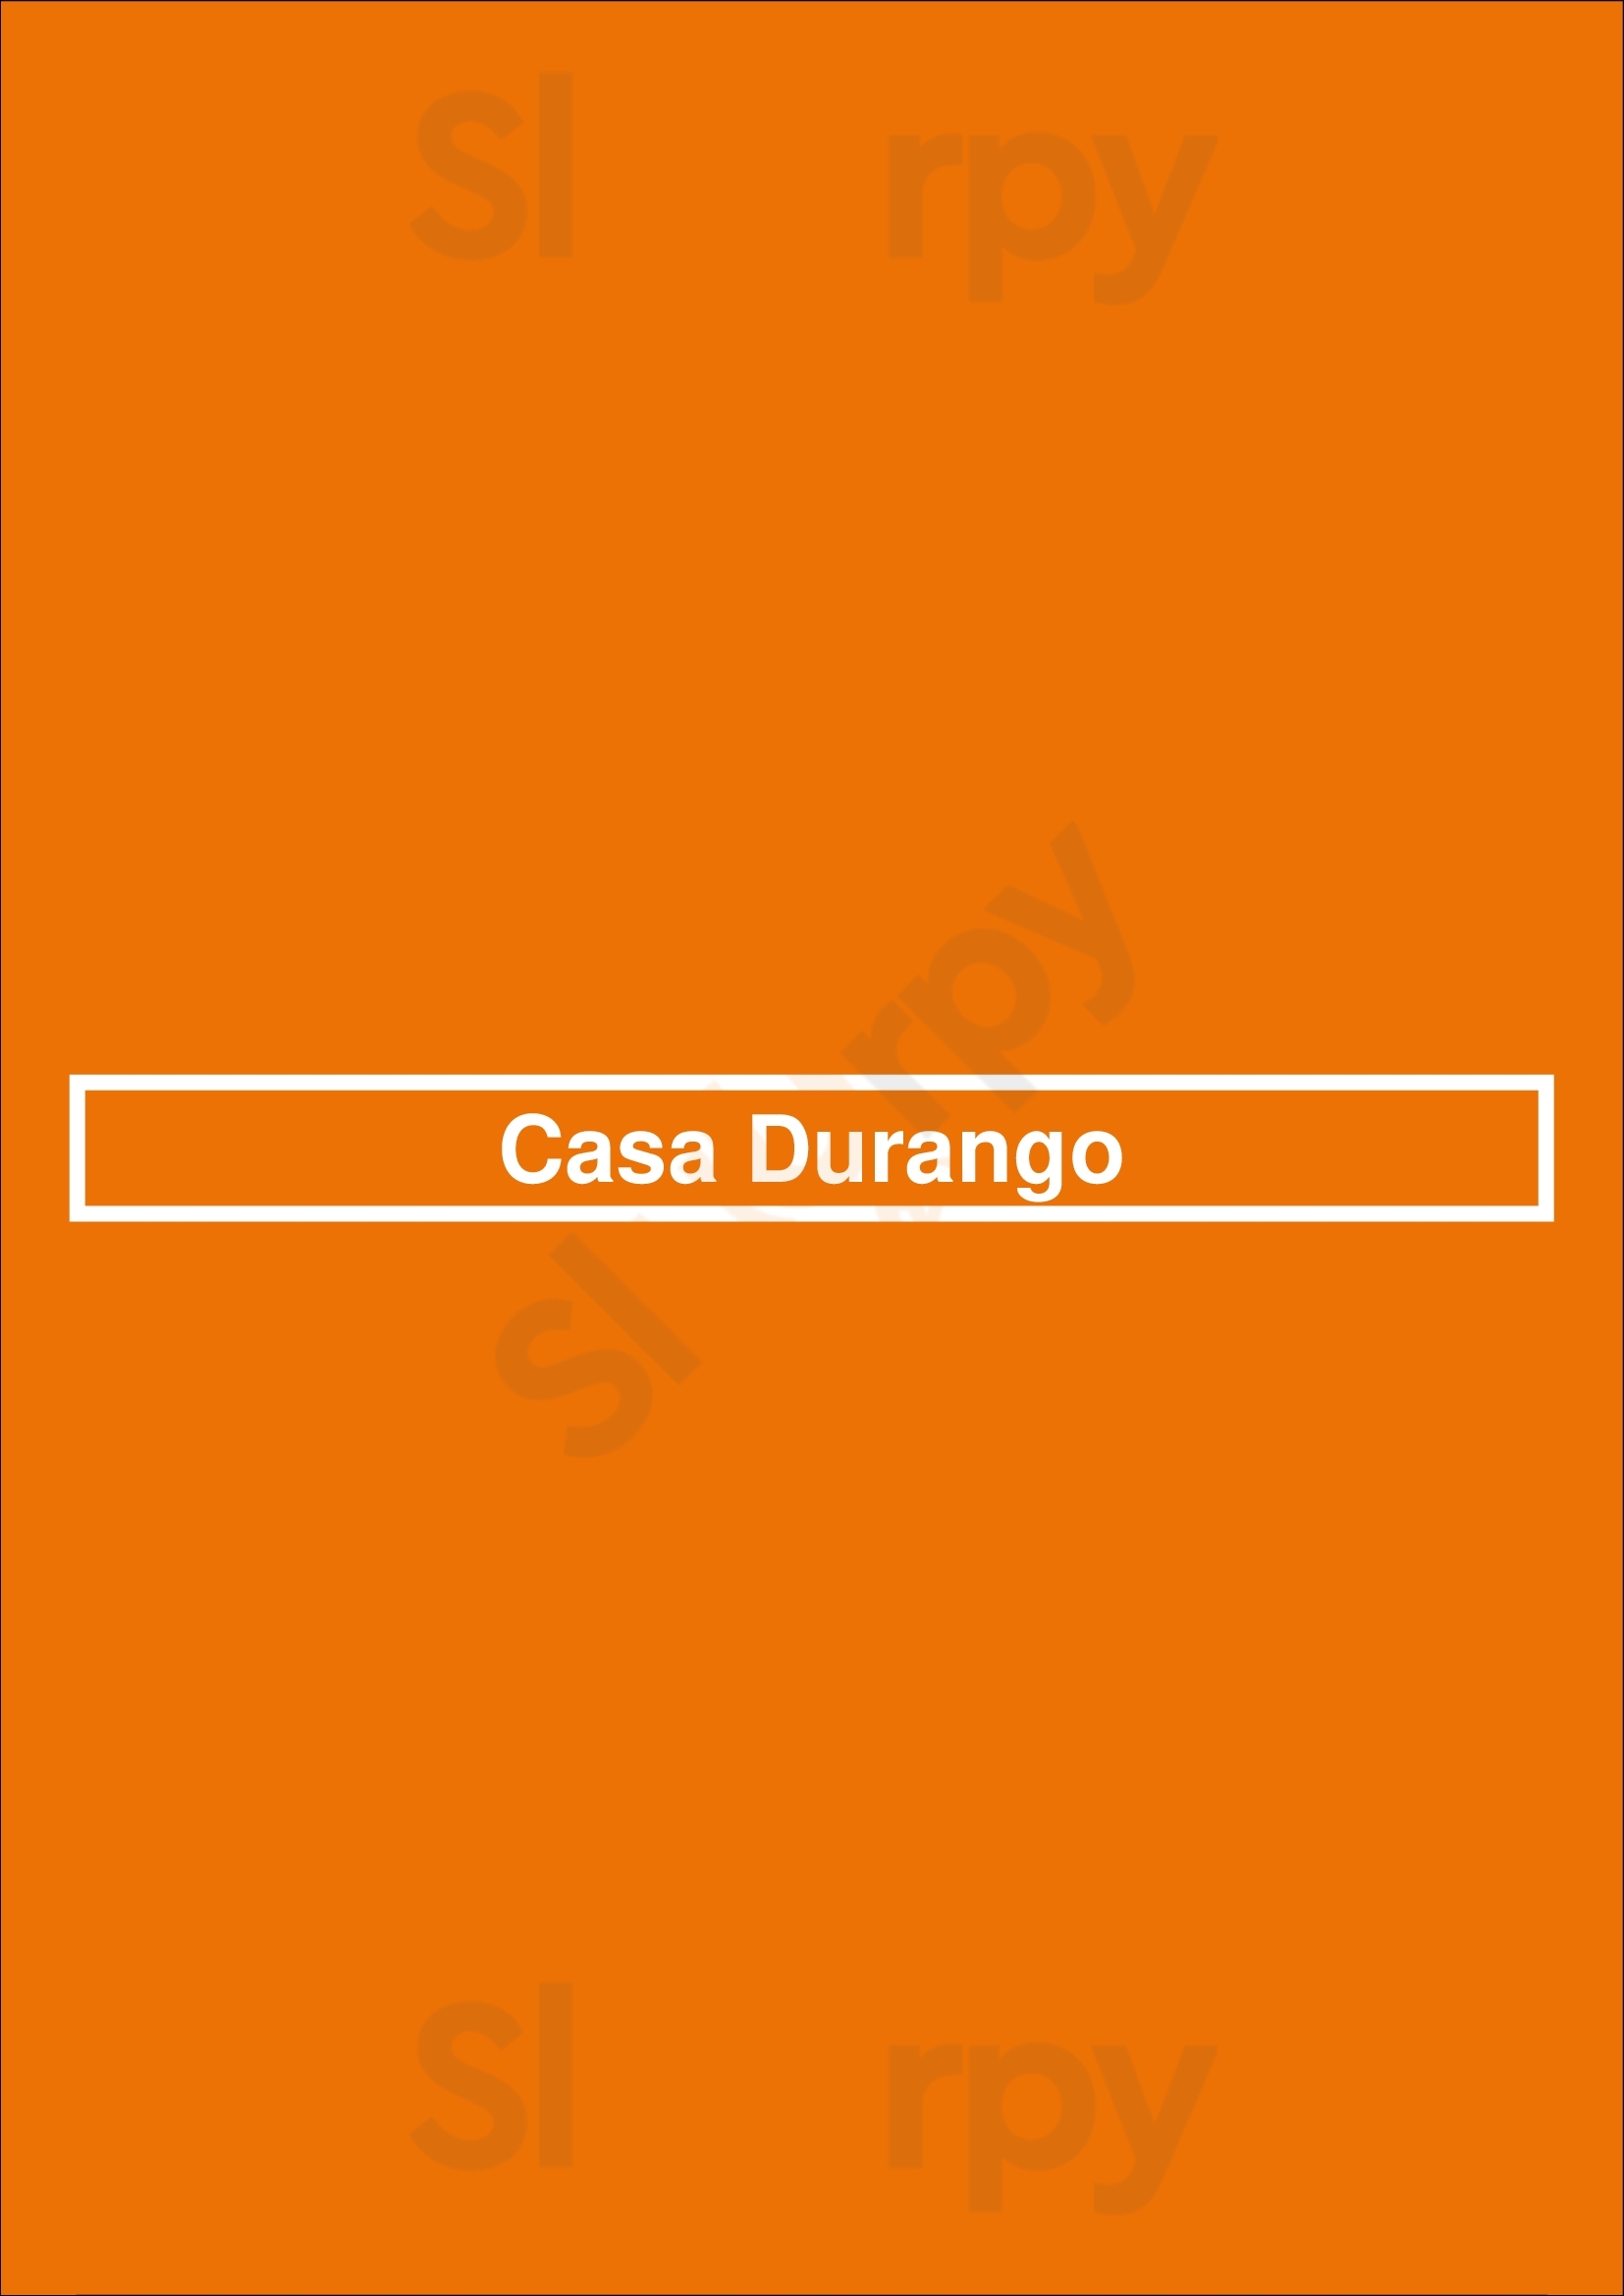 Casa Durango Renton Menu - 1